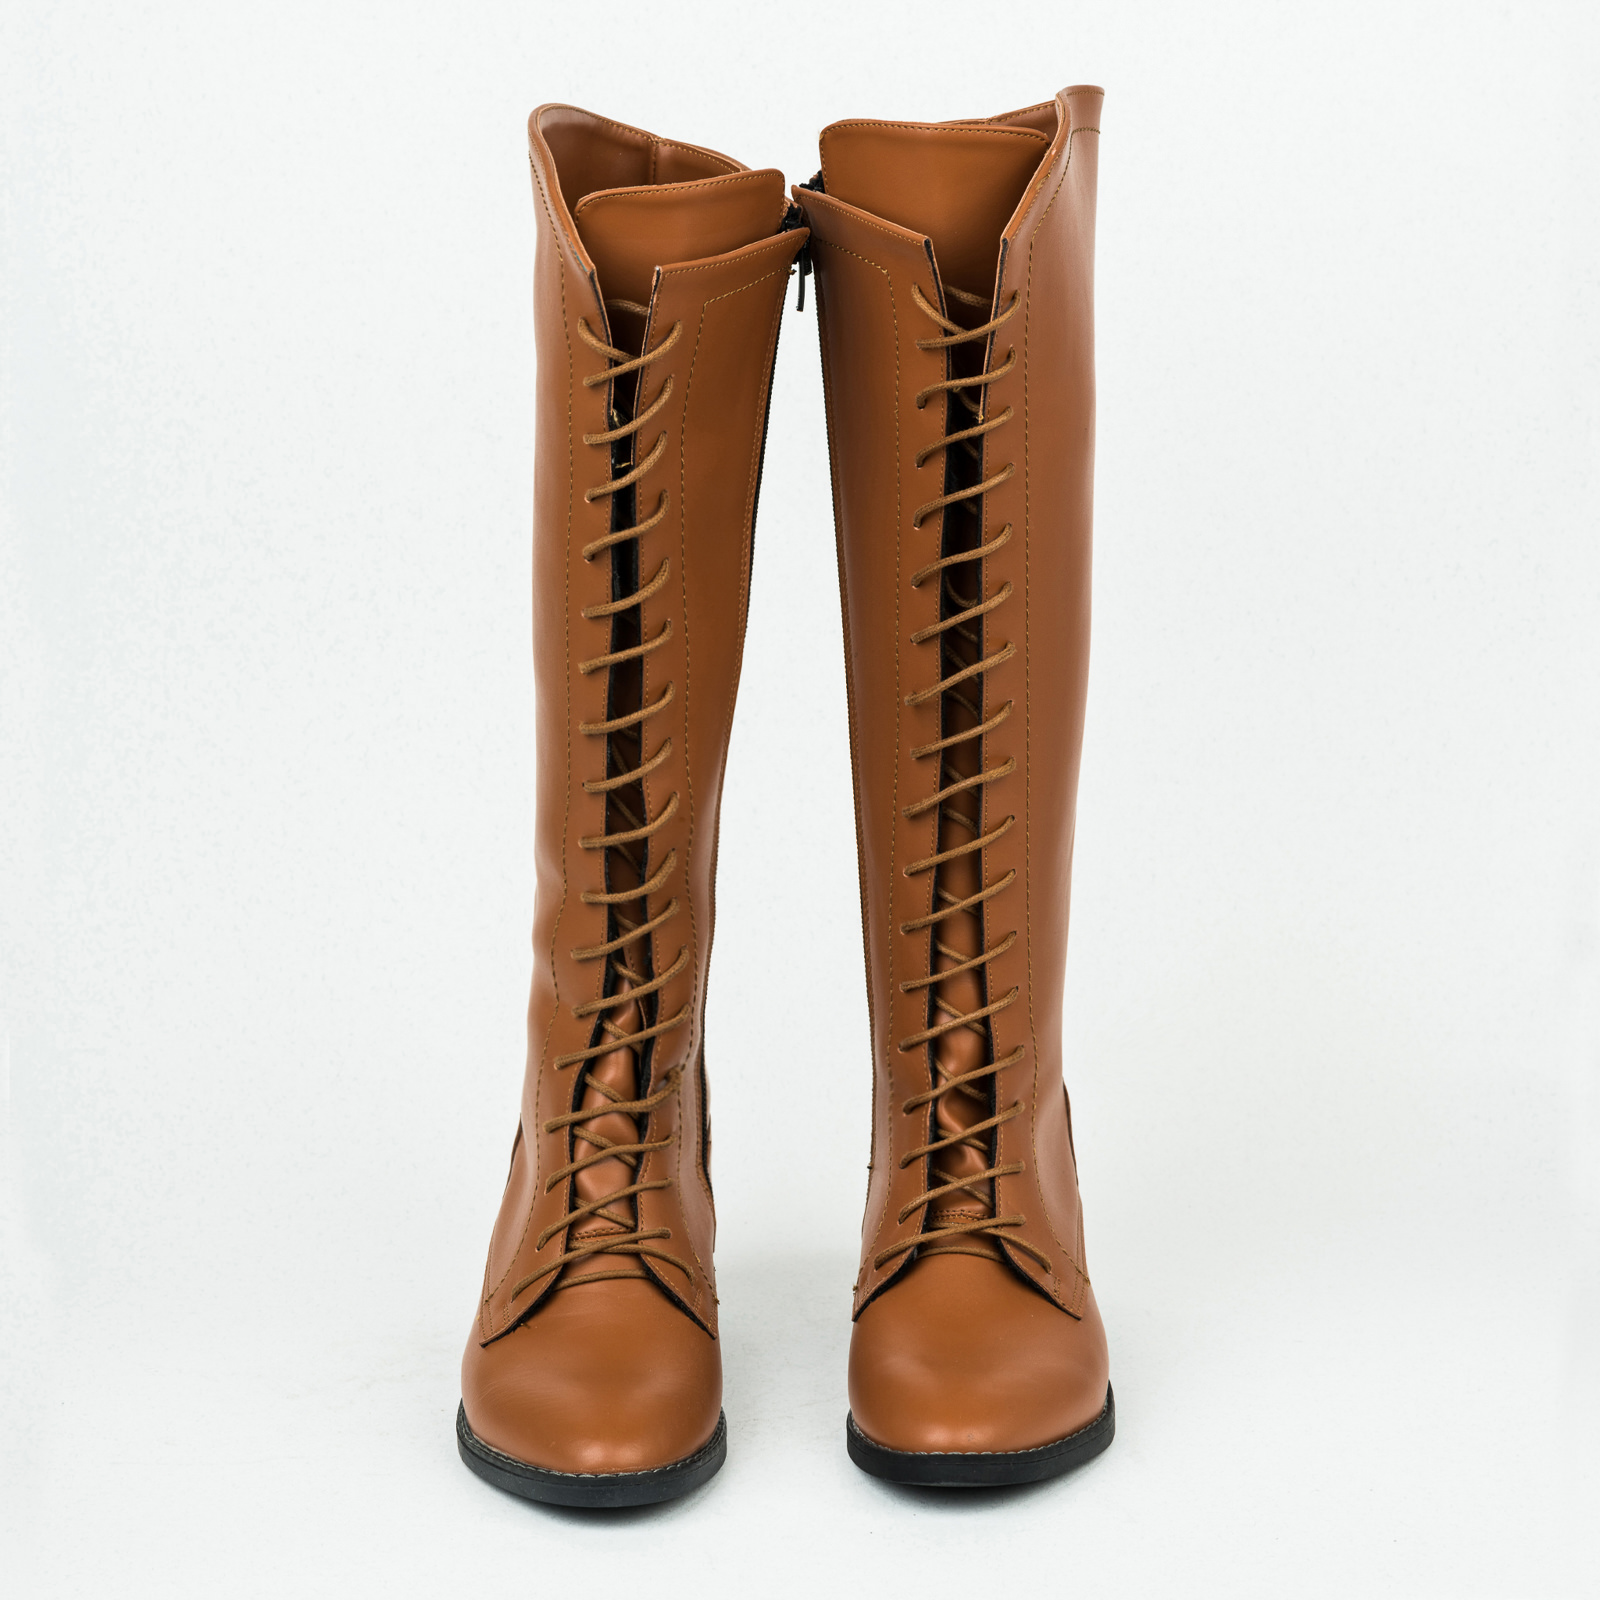 Women boots B141 - CAMEL